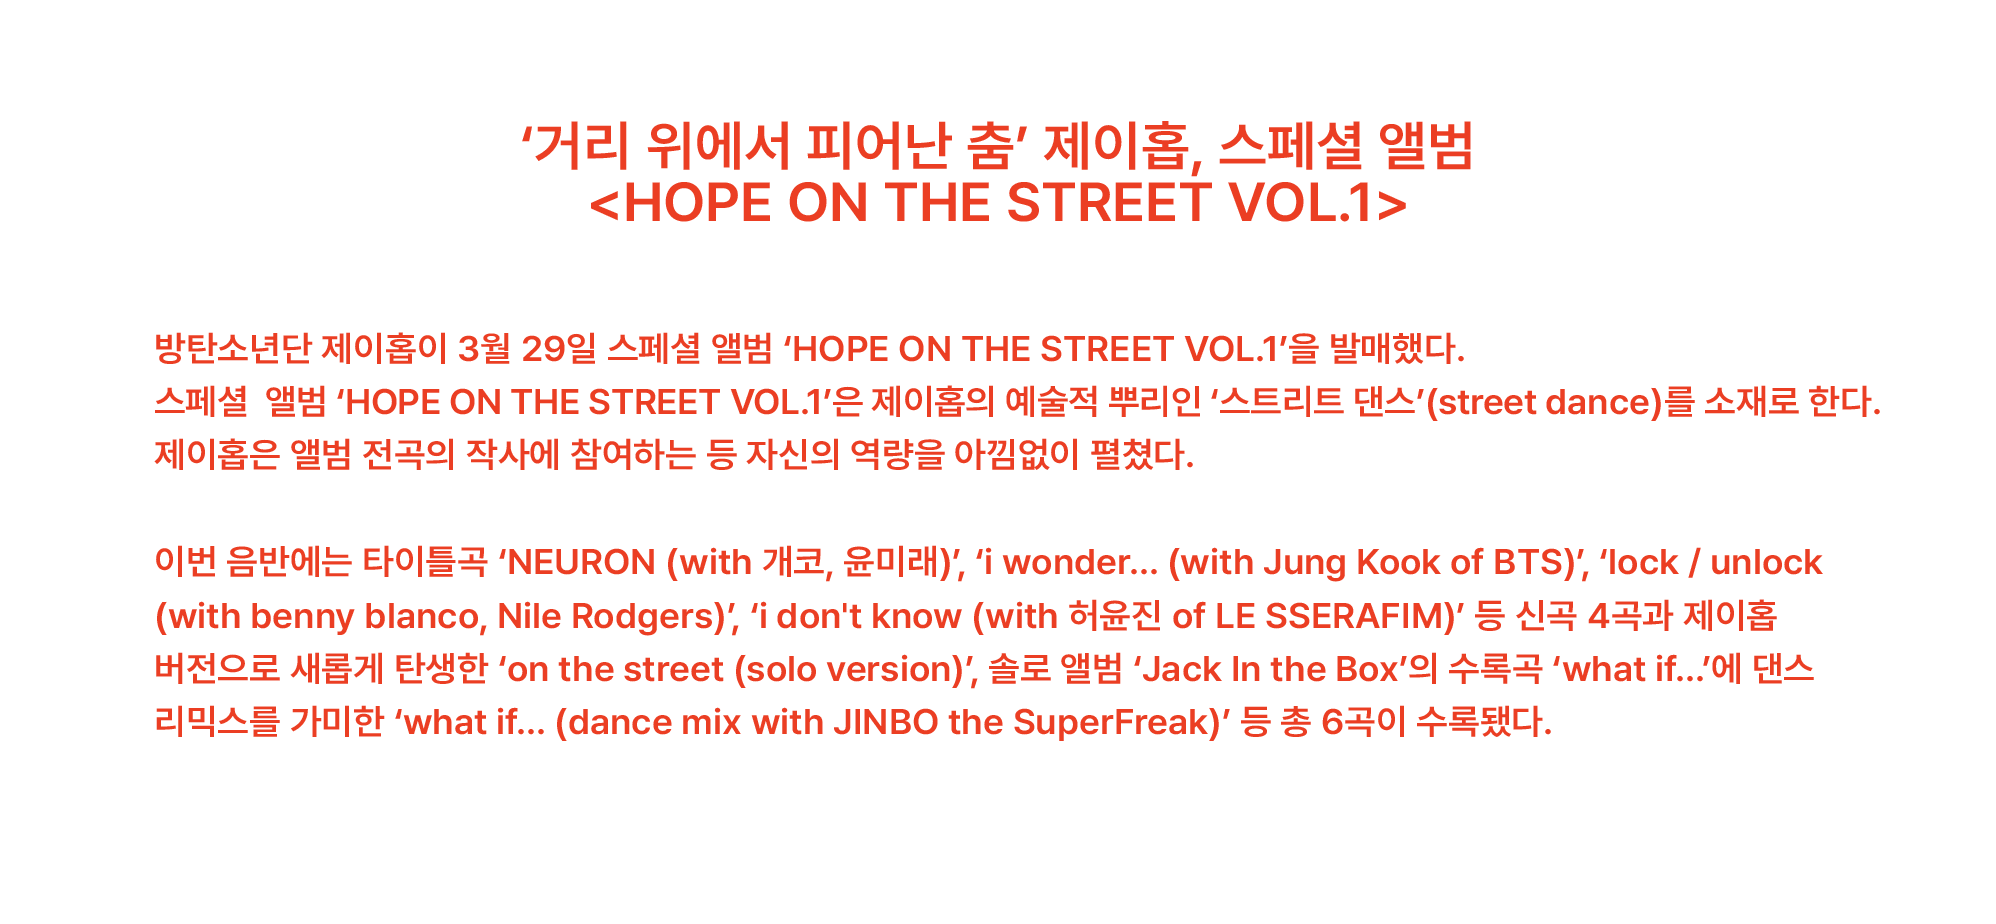 ‘거리 위에서 피어난 춤’ 제이홉, 스페셜 앨범 <HOPE ON THE STREET VOL.1> 방탄소년단 제이홉이 3월 29일 스페셜 앨범 ‘HOPE ON THE STREET VOL.1’을 발매했다. 스페셜 앨범 ‘HOPE ON THE STREET VOL.1’은 제이홉의 예술적 뿌리인 ‘스트리트 댄스’(street dance)를 소재로 한다. 제이홉은 앨범 전곡의 작사에 참여하는 등 자신의 역량을 아낌없이 펼쳤다. 이번 음반에는 타이틀곡 ‘NEURON (with 개코, 윤미래)’, ‘i wonder... (with Jung Kook of BTS)’, ‘lock / unlock (with benny blanco, Nile Rodgers)’, ‘i don't know (with 허윤진 of LE SSERAFIM)’ 등 신곡 4곡과 제이홉 버전으로 새롭게 탄생한 ‘on the street (solo version)’, 솔로 앨범 ‘Jack In the Box’의 수록곡 ‘what if...’에 댄스 리믹스를 가미한 ‘what if... (dance mix with JINBO the SuperFreak)’ 등 총 6곡이 수록됐다.